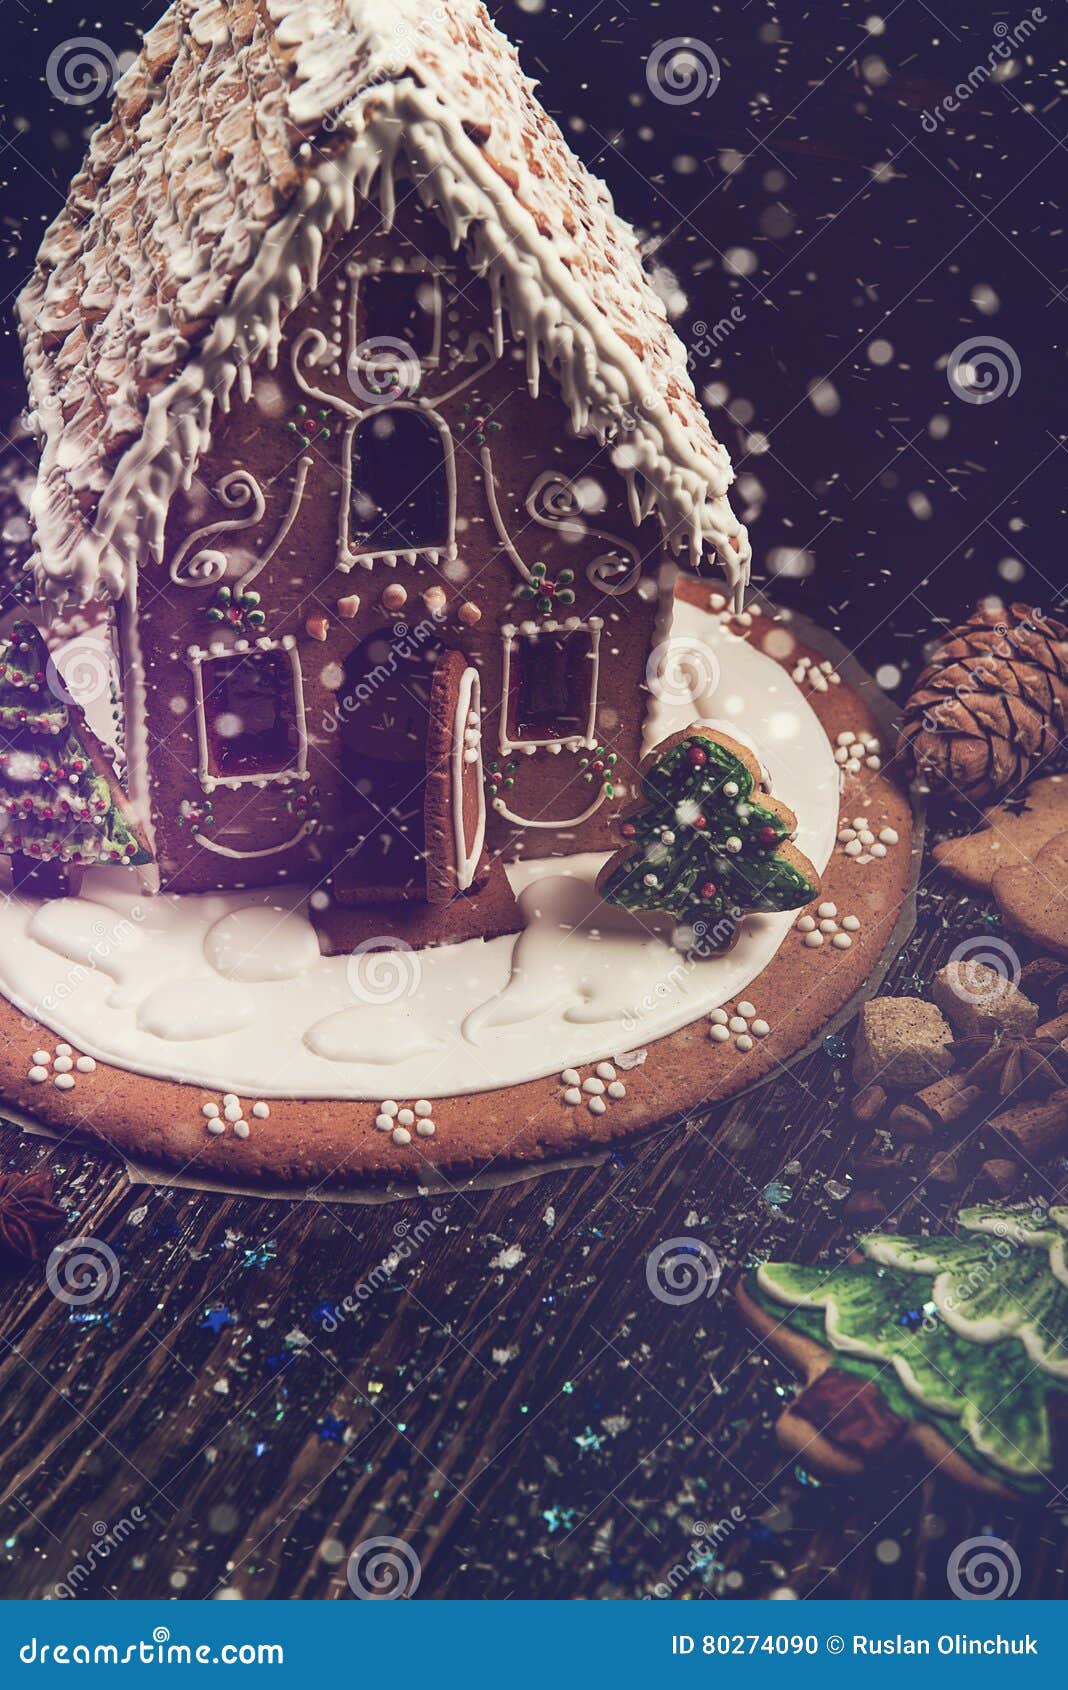 欧式复古创意 树脂圣诞用品饼干屋LED夜灯房子家居装饰工艺品摆件-阿里巴巴